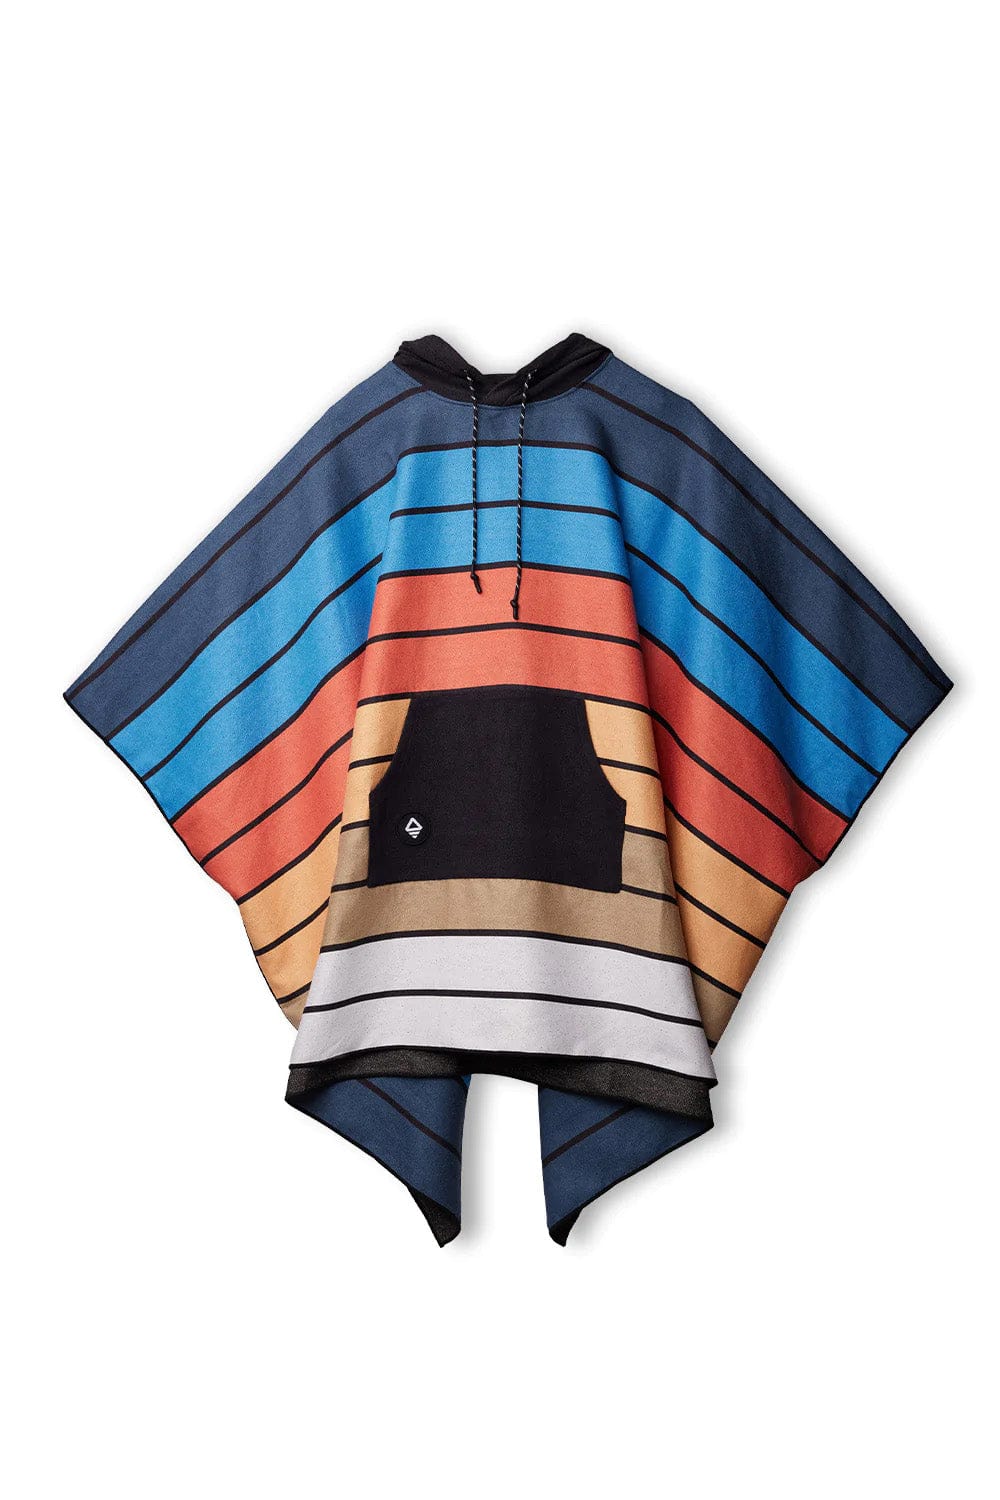 Stripes - Blue Orange Custom Nomadix Poncho Towel